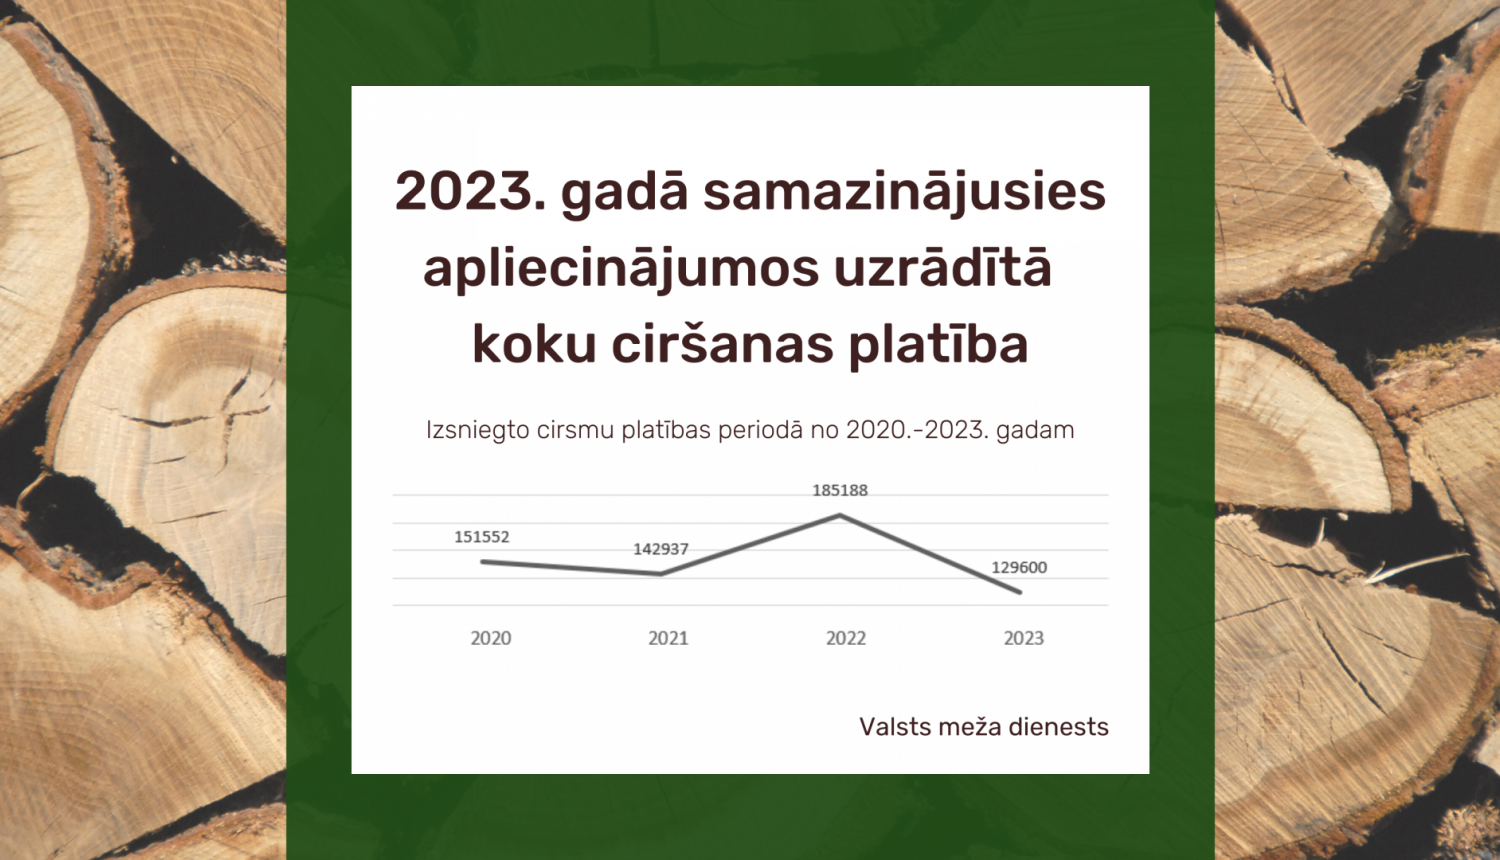 2023. gadā samazinājusies apliecinājumos uzrādītā koku ciršanas platība